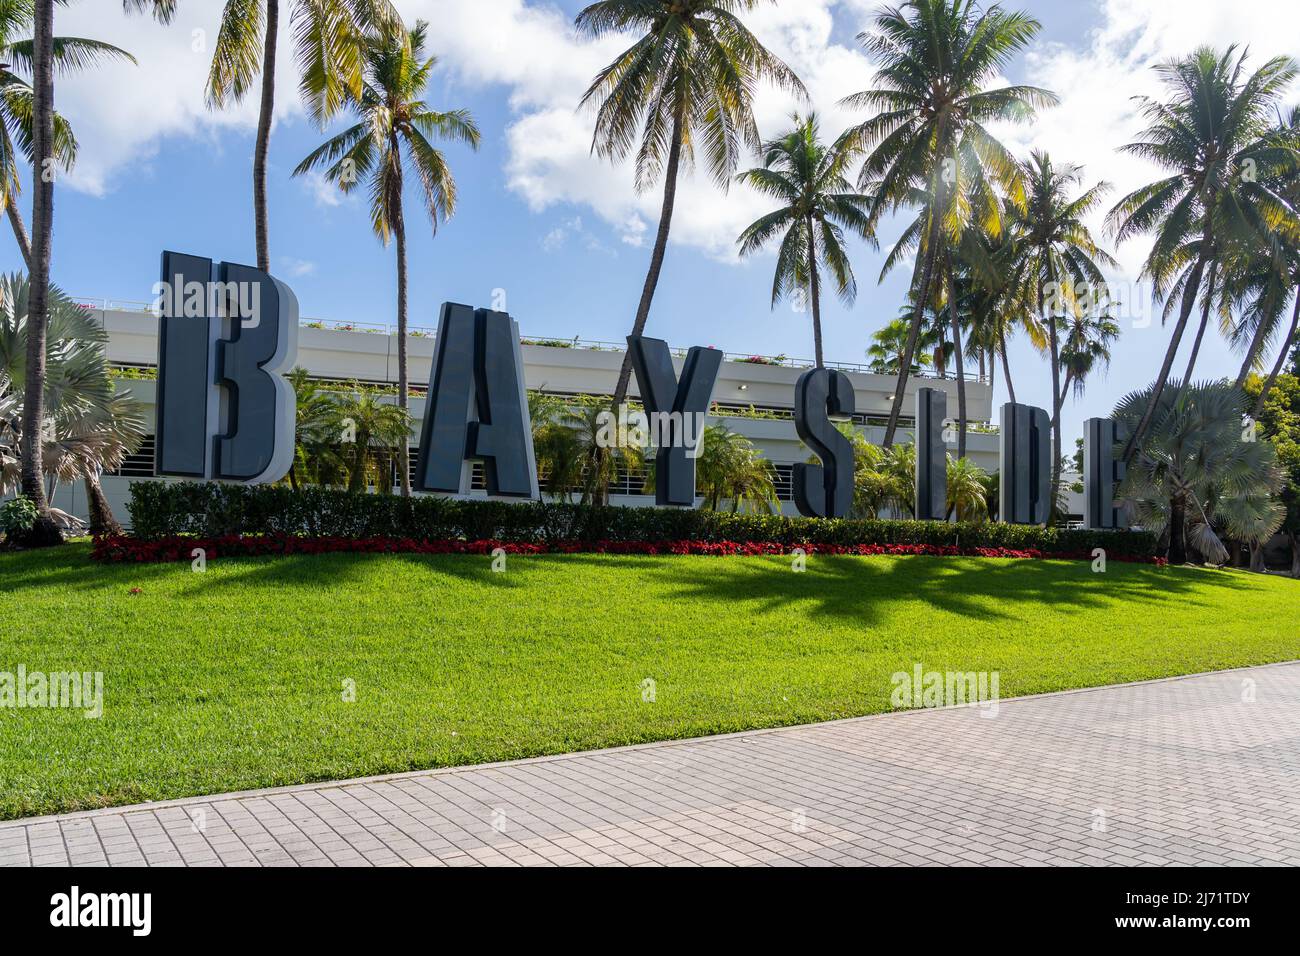 Miami, Floride, États-Unis - 2 janvier 2022 : le panneau Bayside est montré à Miami, Floride, États-Unis. Bayside Marketplace est un centre commercial en plein air de deux étages. Banque D'Images